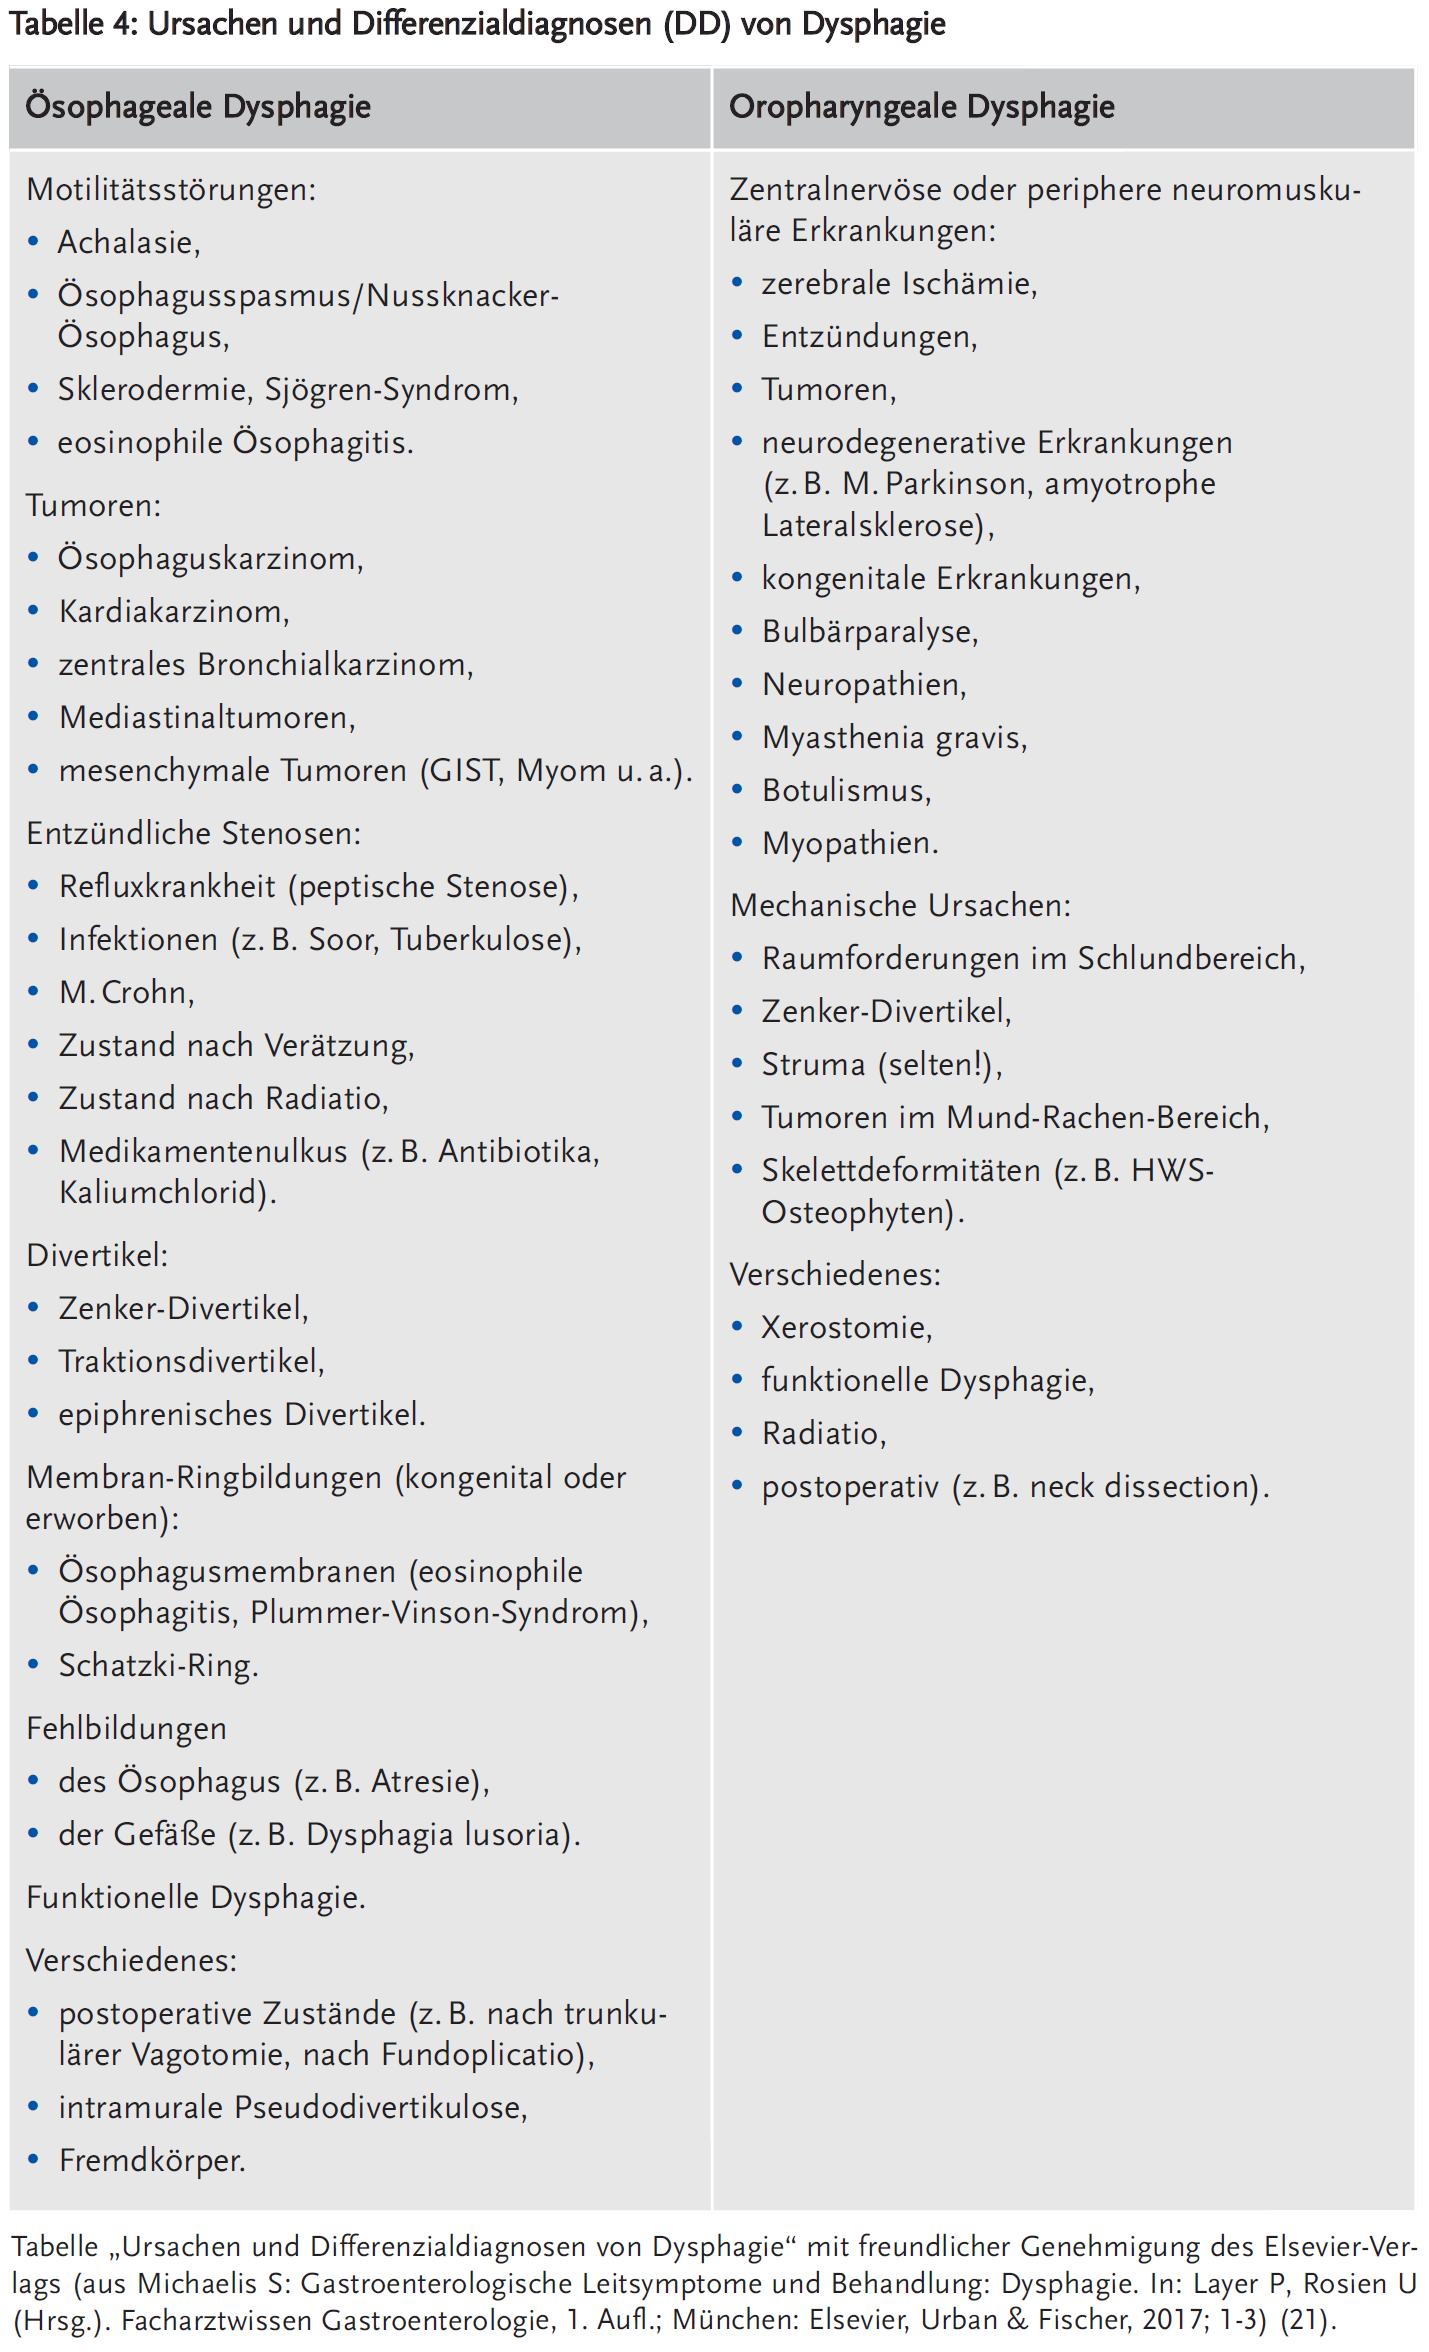 Tabelle 4: Ursachen und Differenzialdiagnosen (DD) von Dysphagie